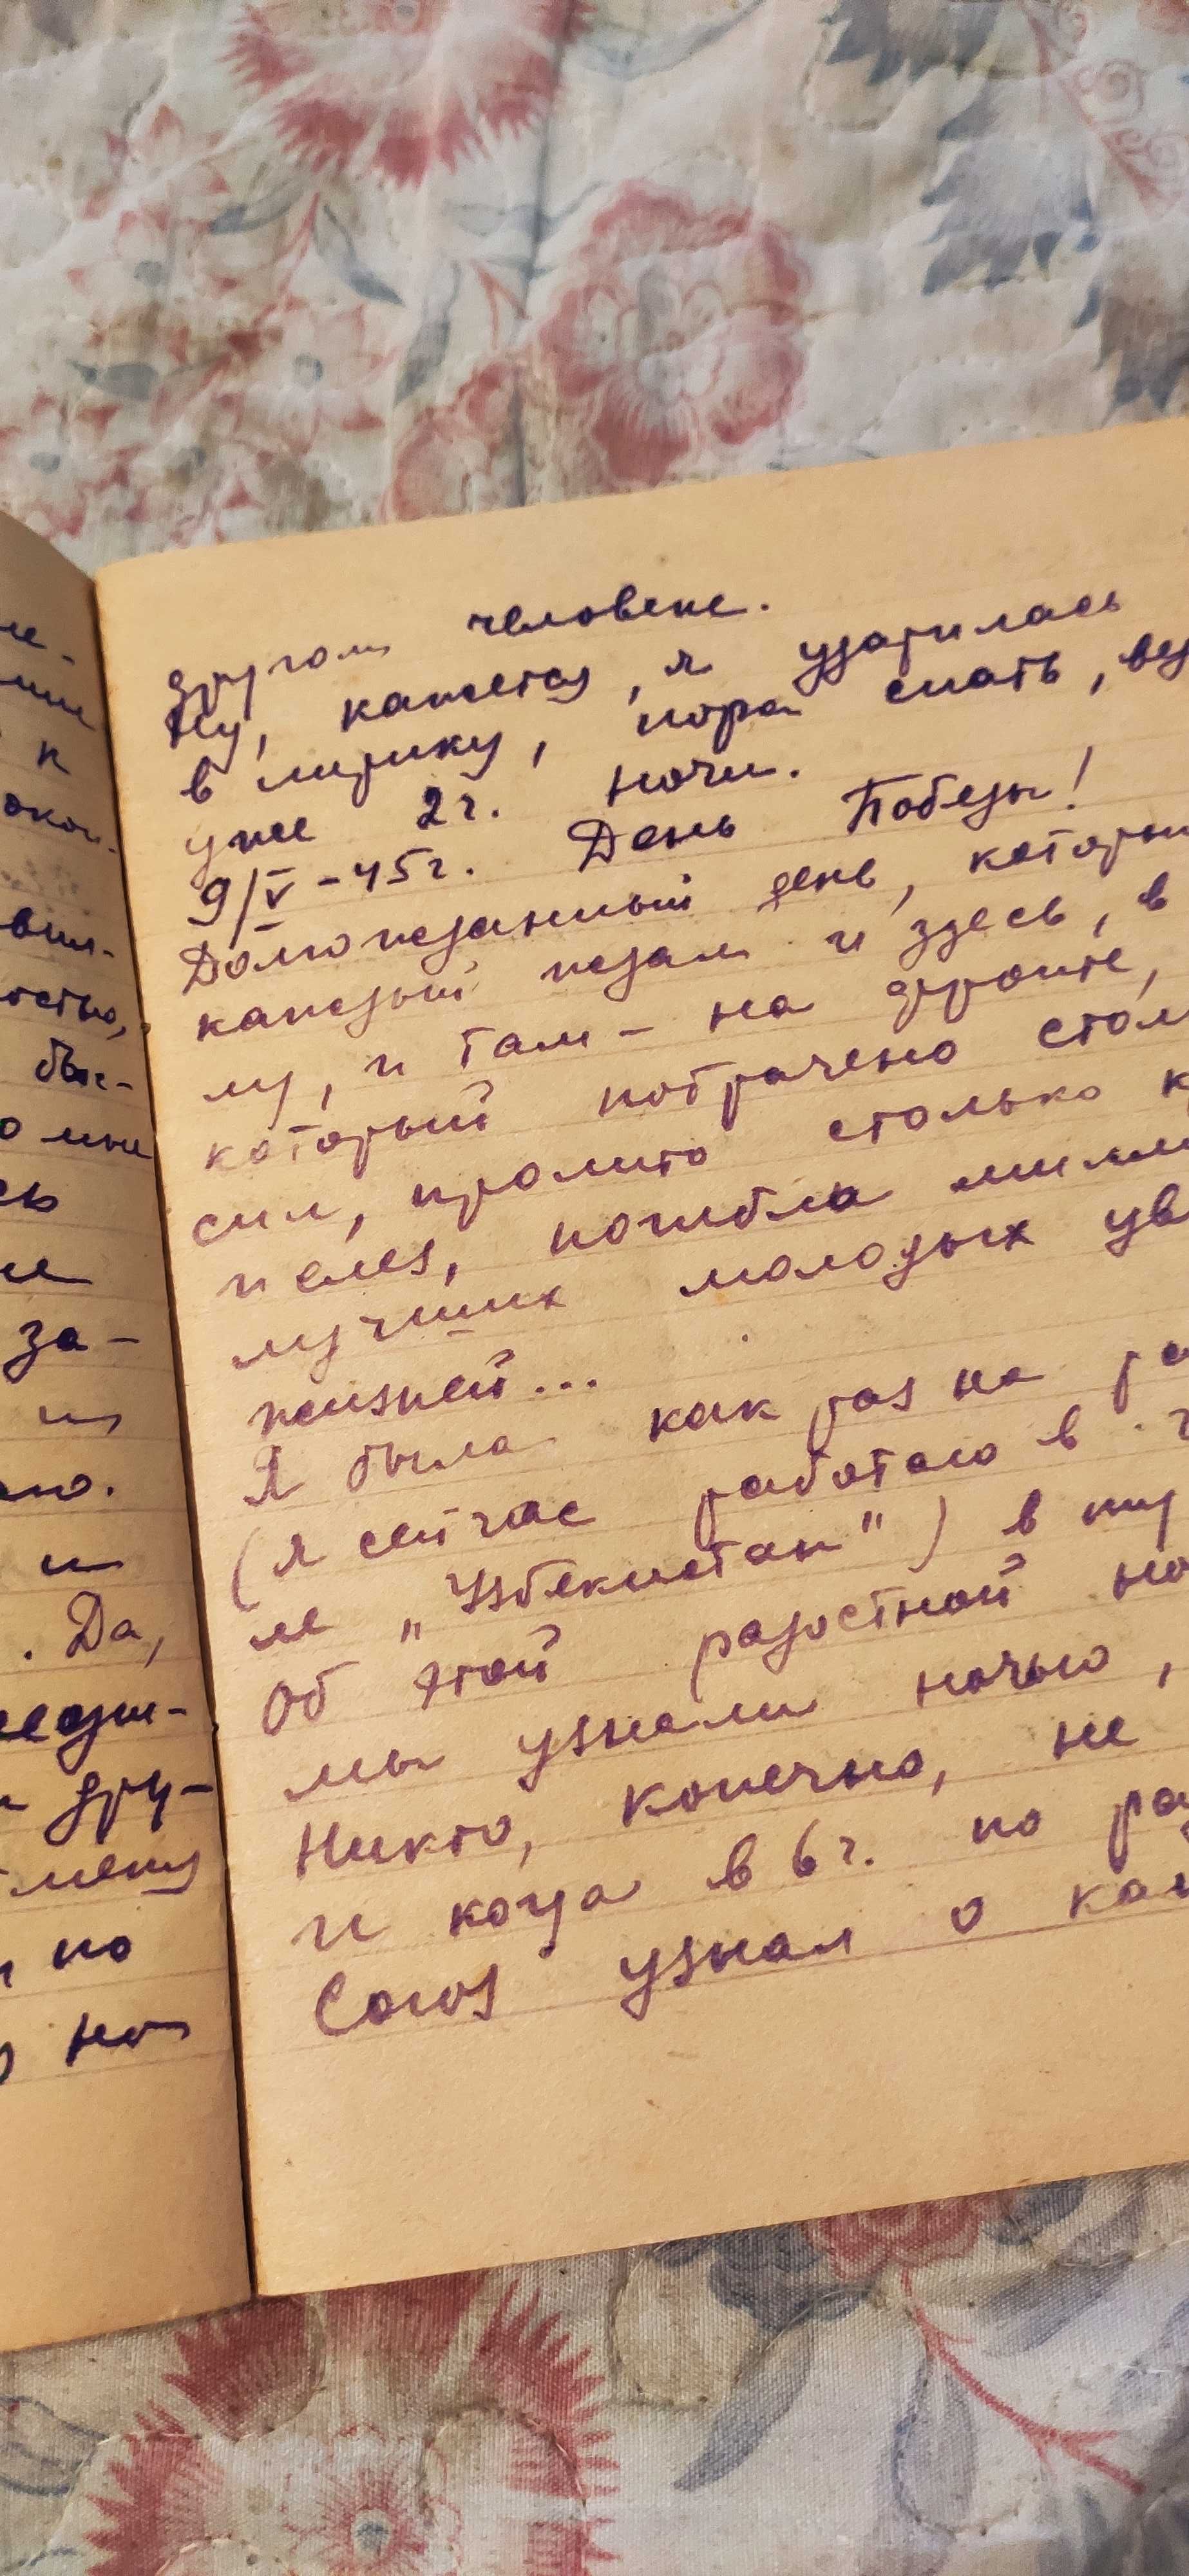 Тетрадь для записи, писала дневник девушка  Панова в 1945 году